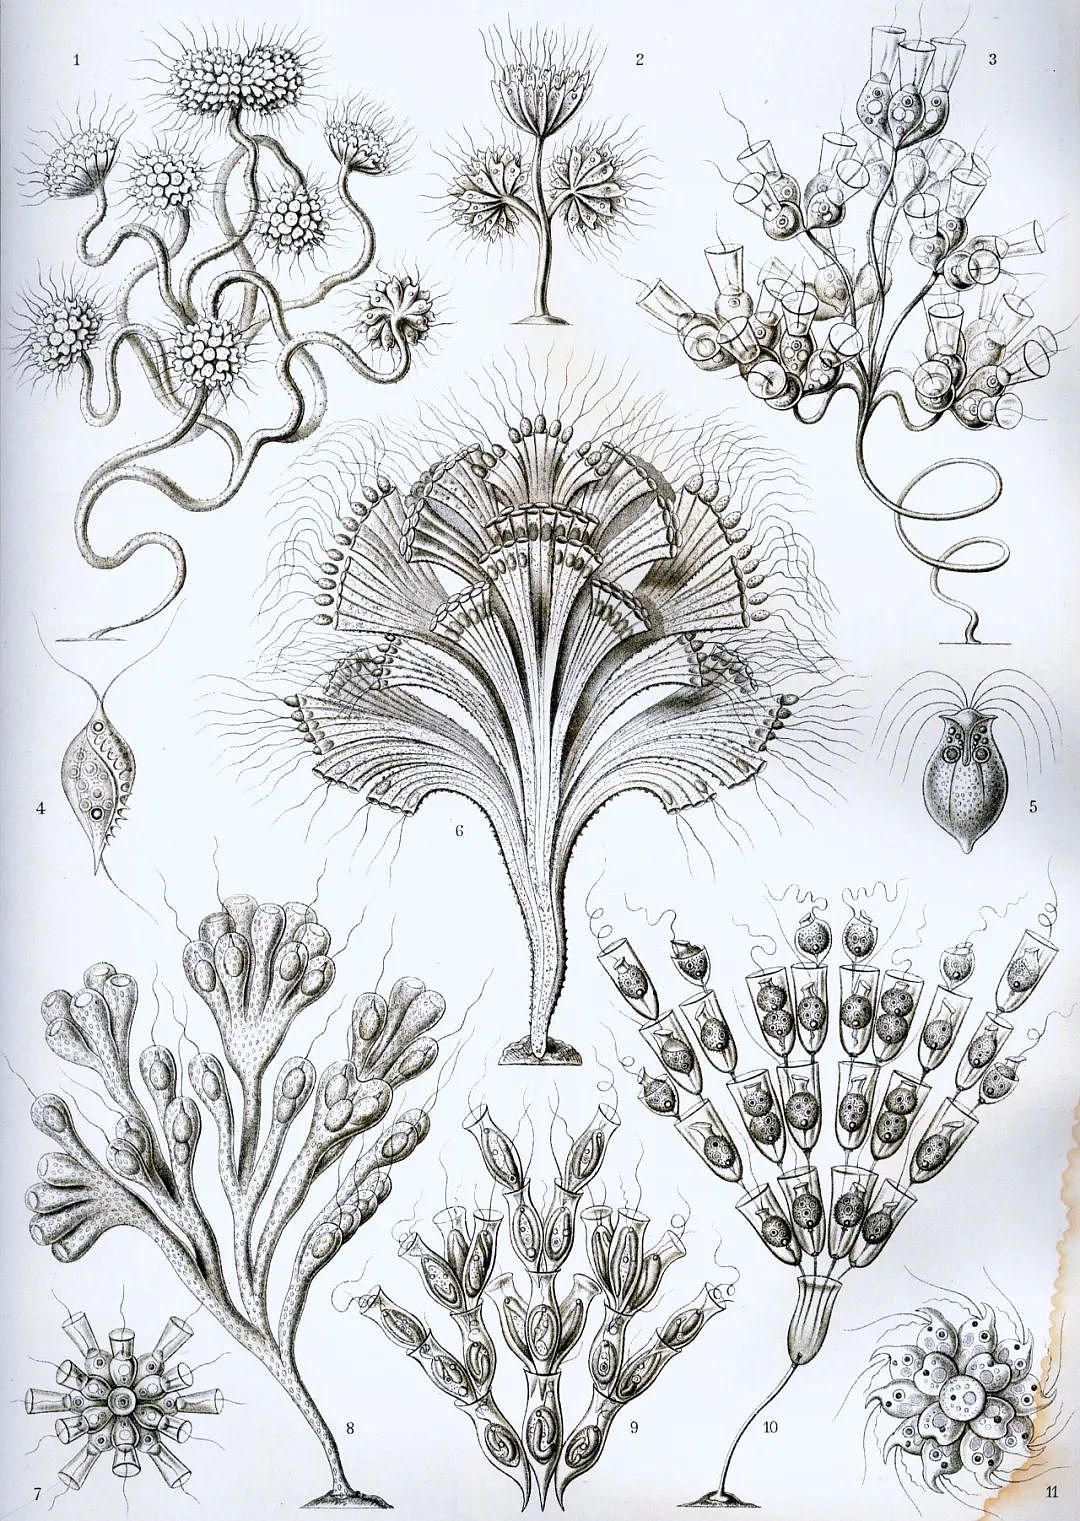  《自然界的艺术形态》中描绘的鞭毛虫。| 图片来源：Wikipedia